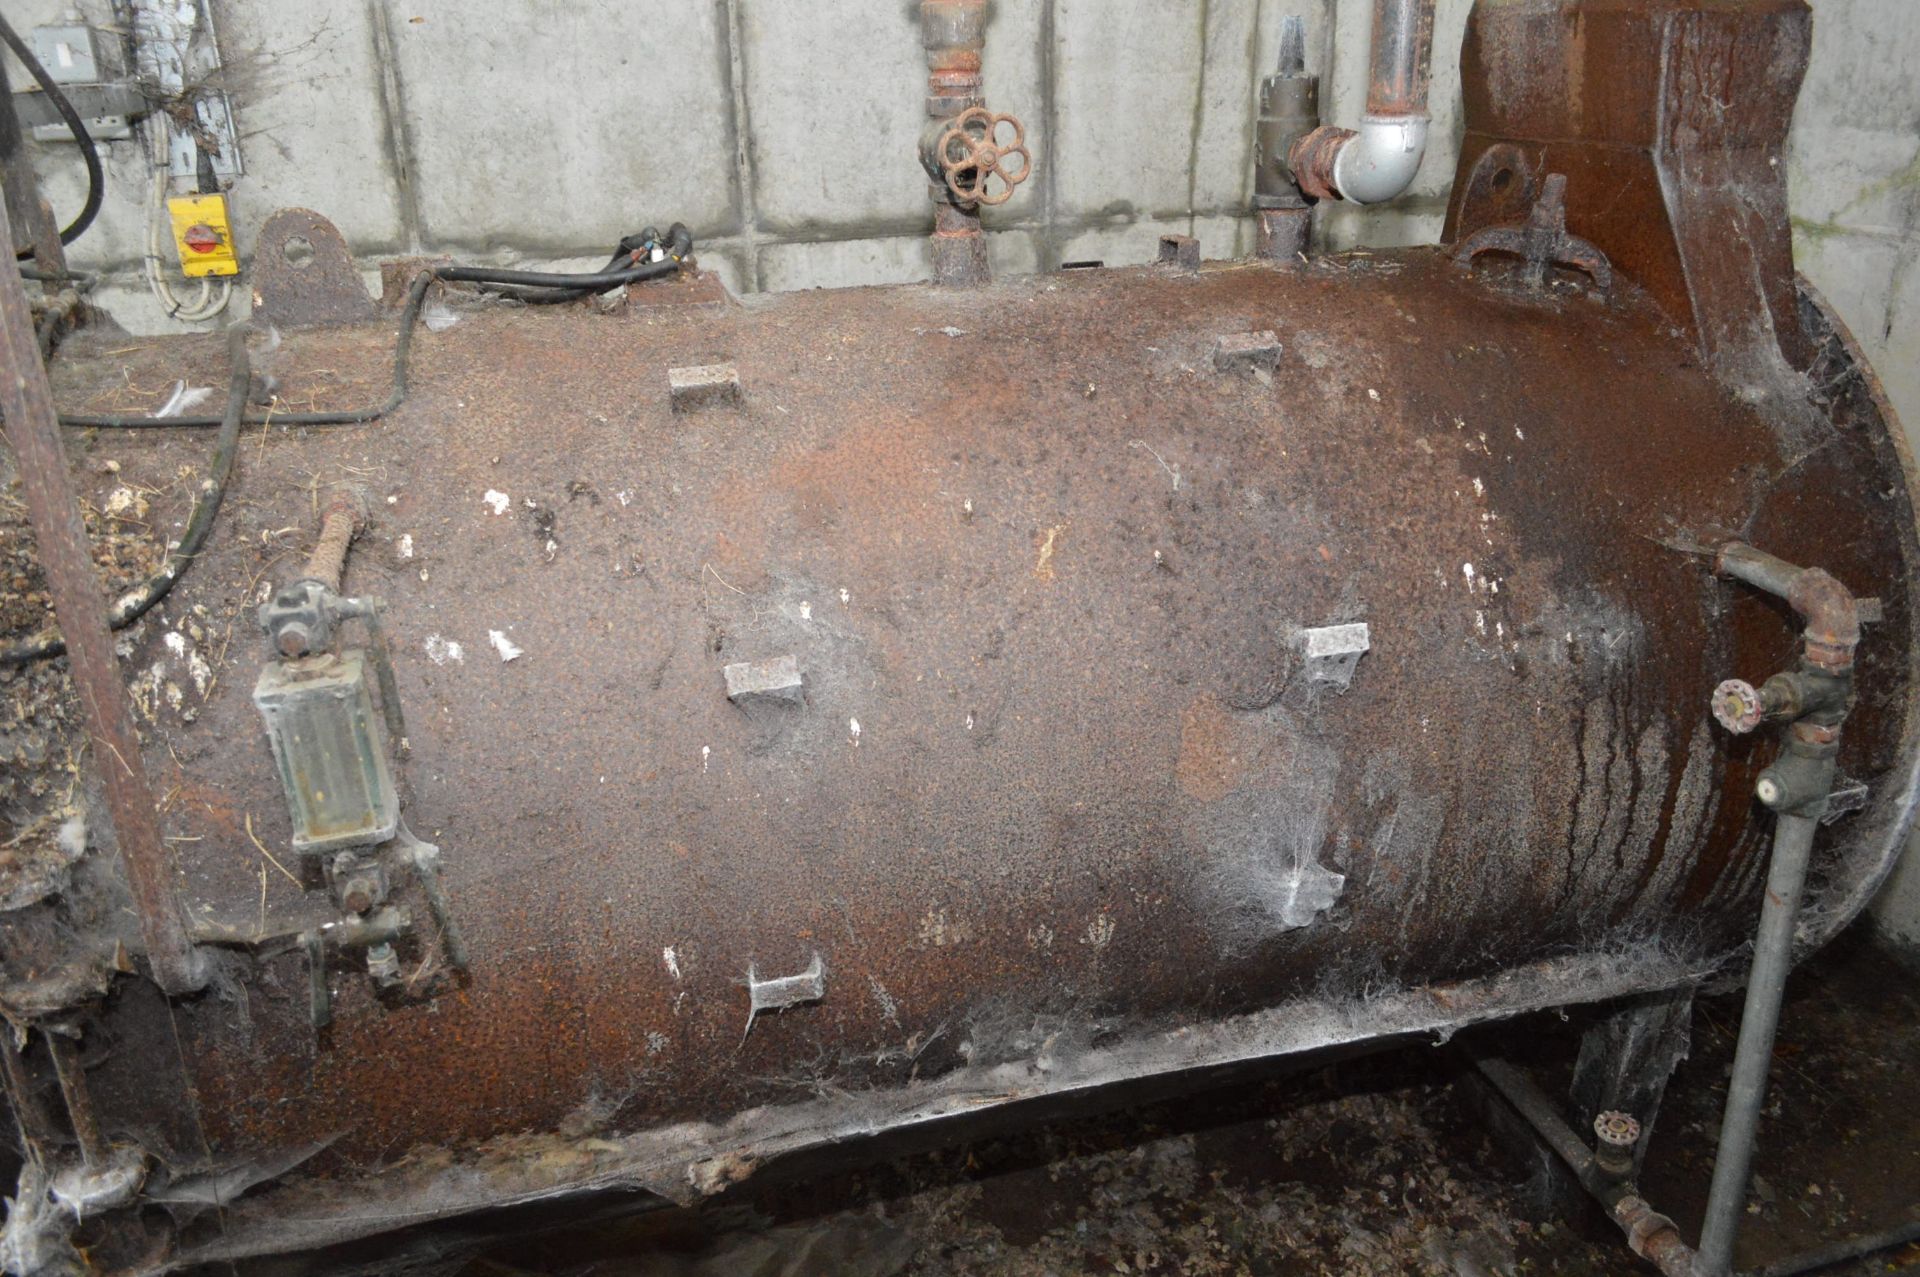 Bradlee S46B Oil Fired Steam Boiler, serial no. S784 - Image 2 of 3